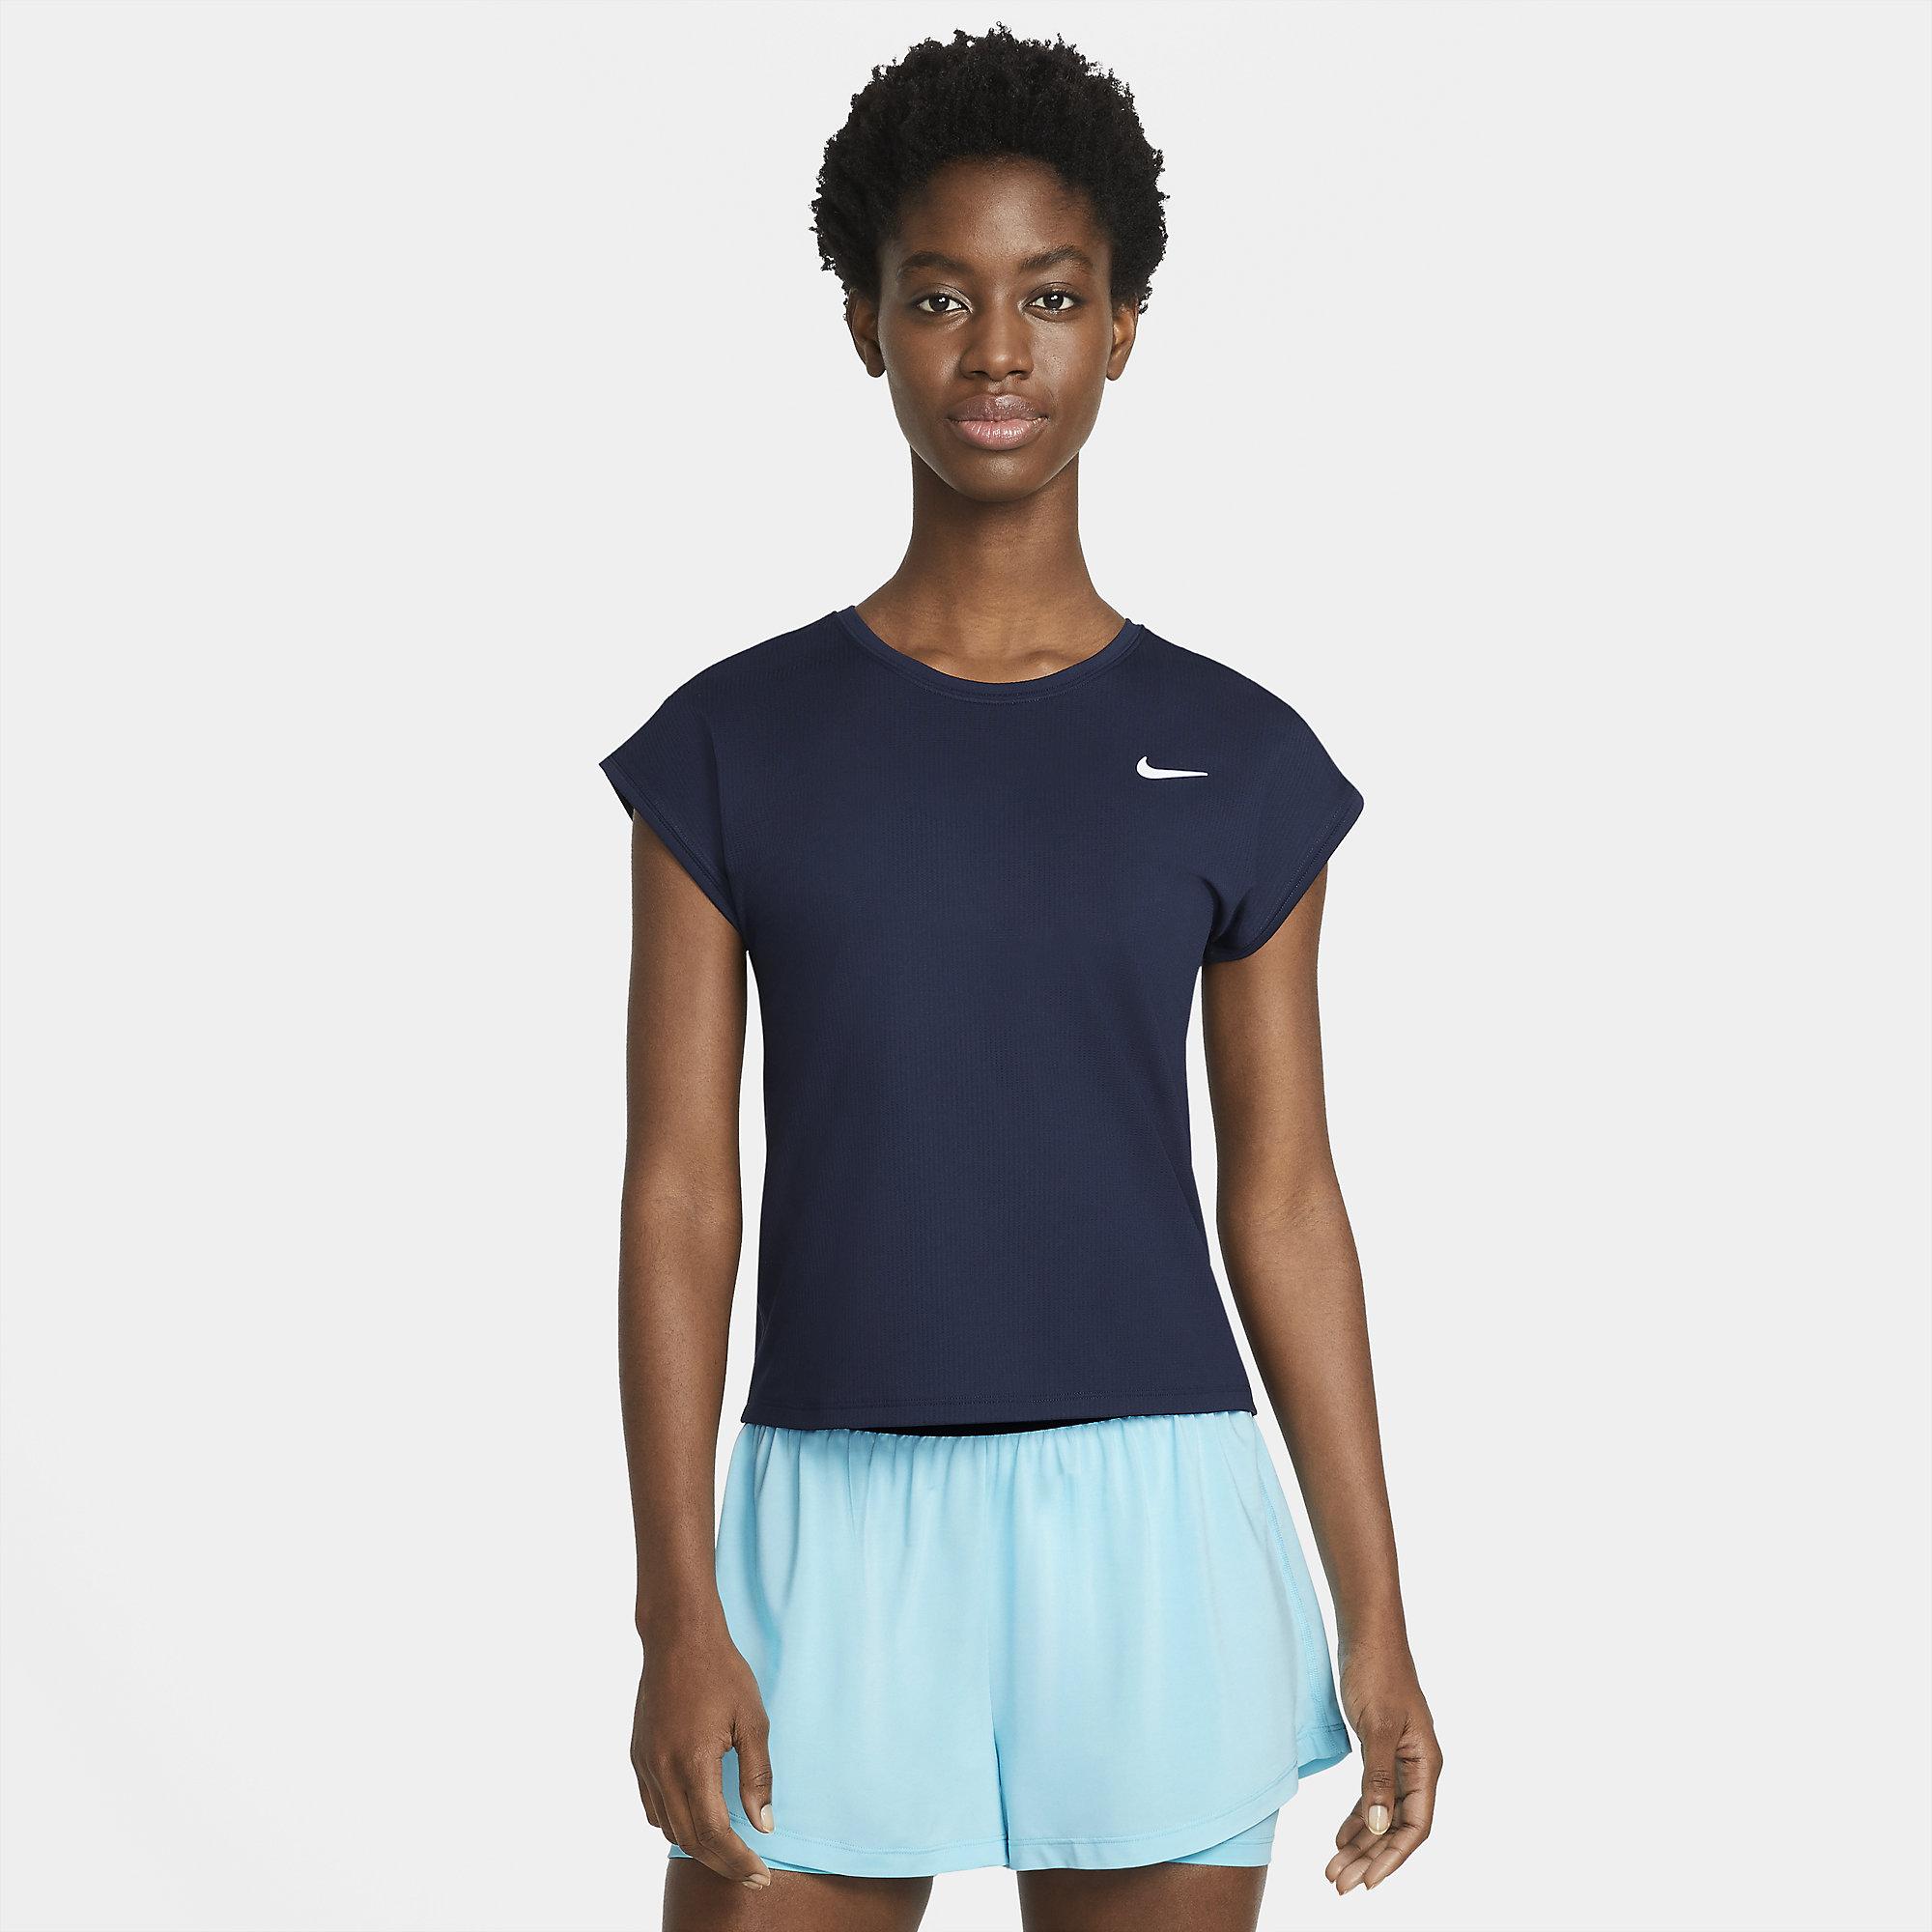 Nike Womens Victory Top - Obsidian - Tennisnuts.com